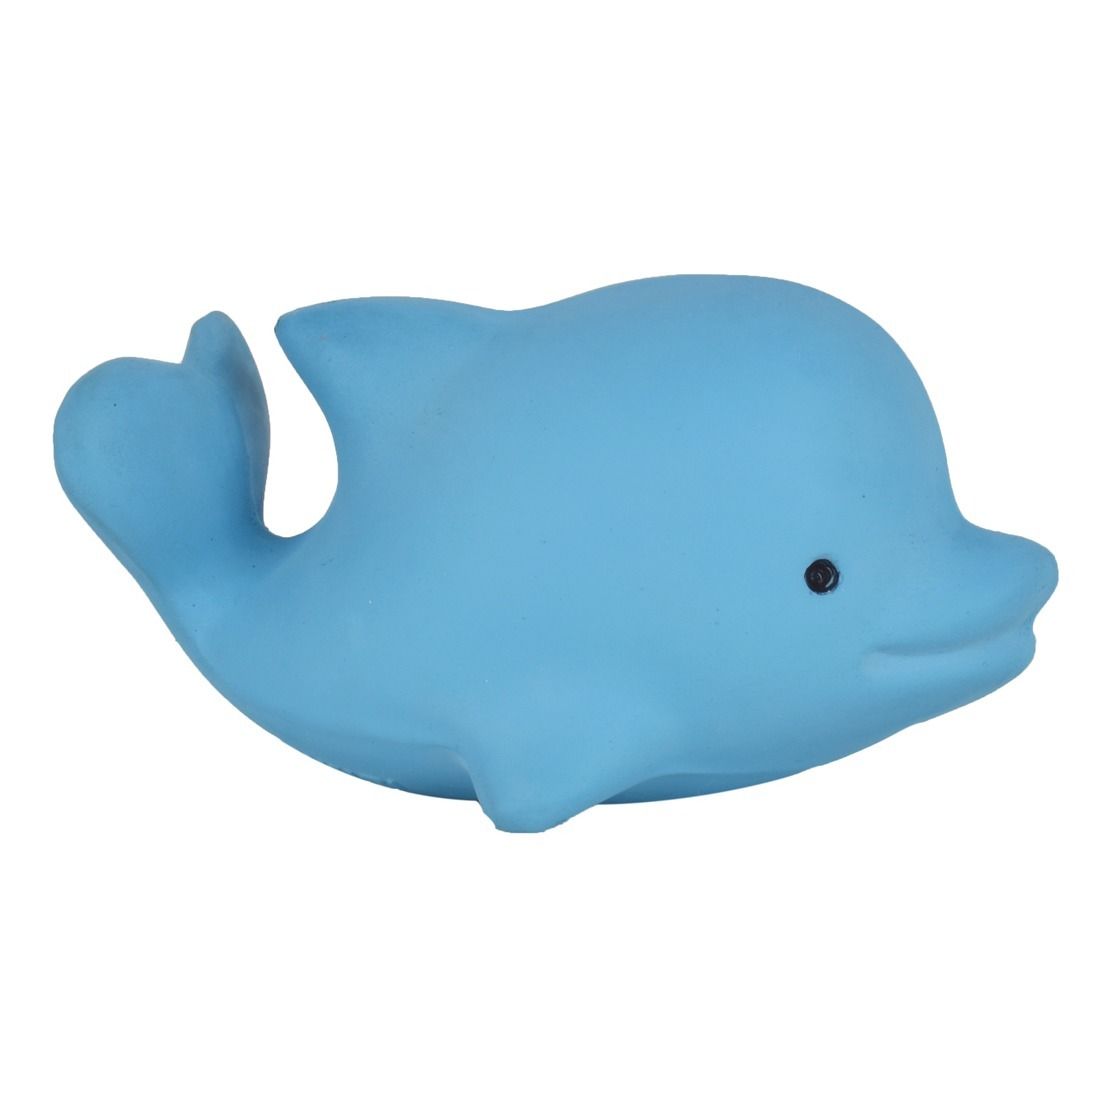 bath whale toy